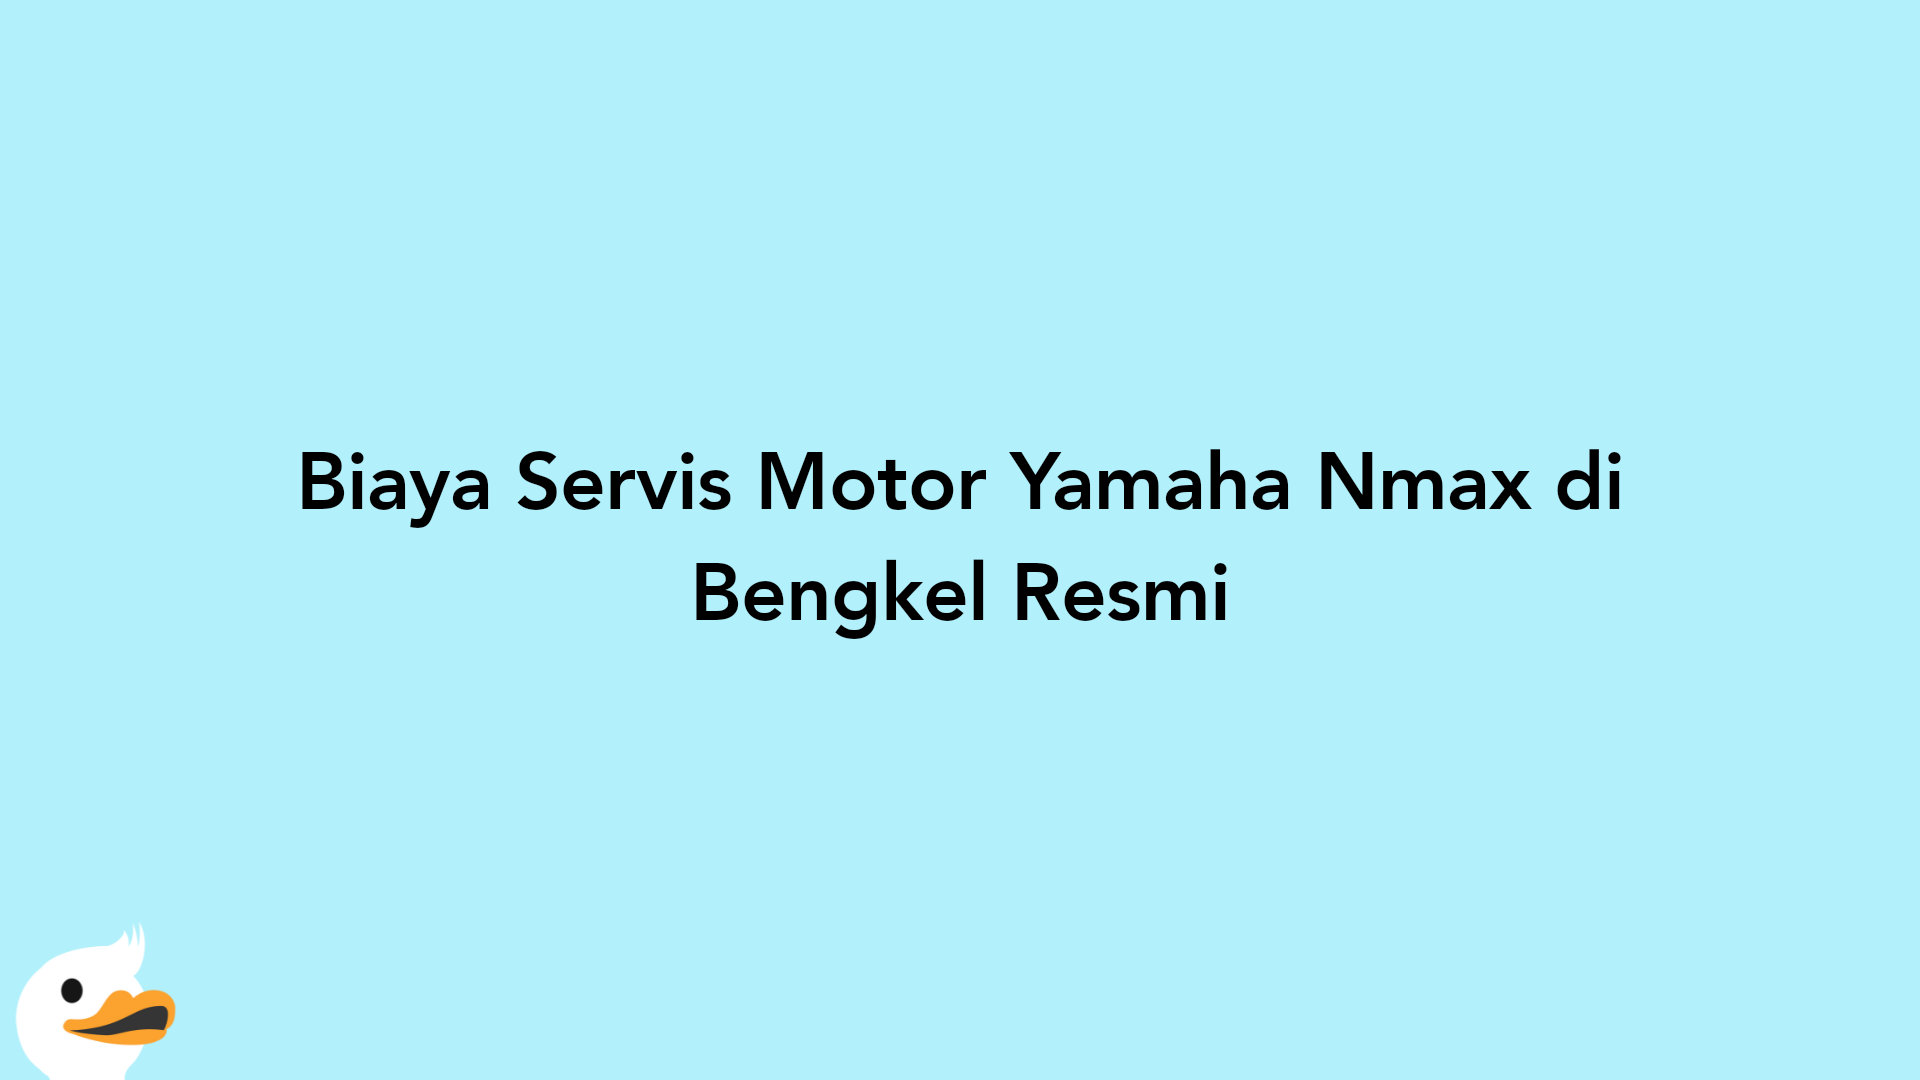 Biaya Servis Motor Yamaha Nmax di Bengkel Resmi